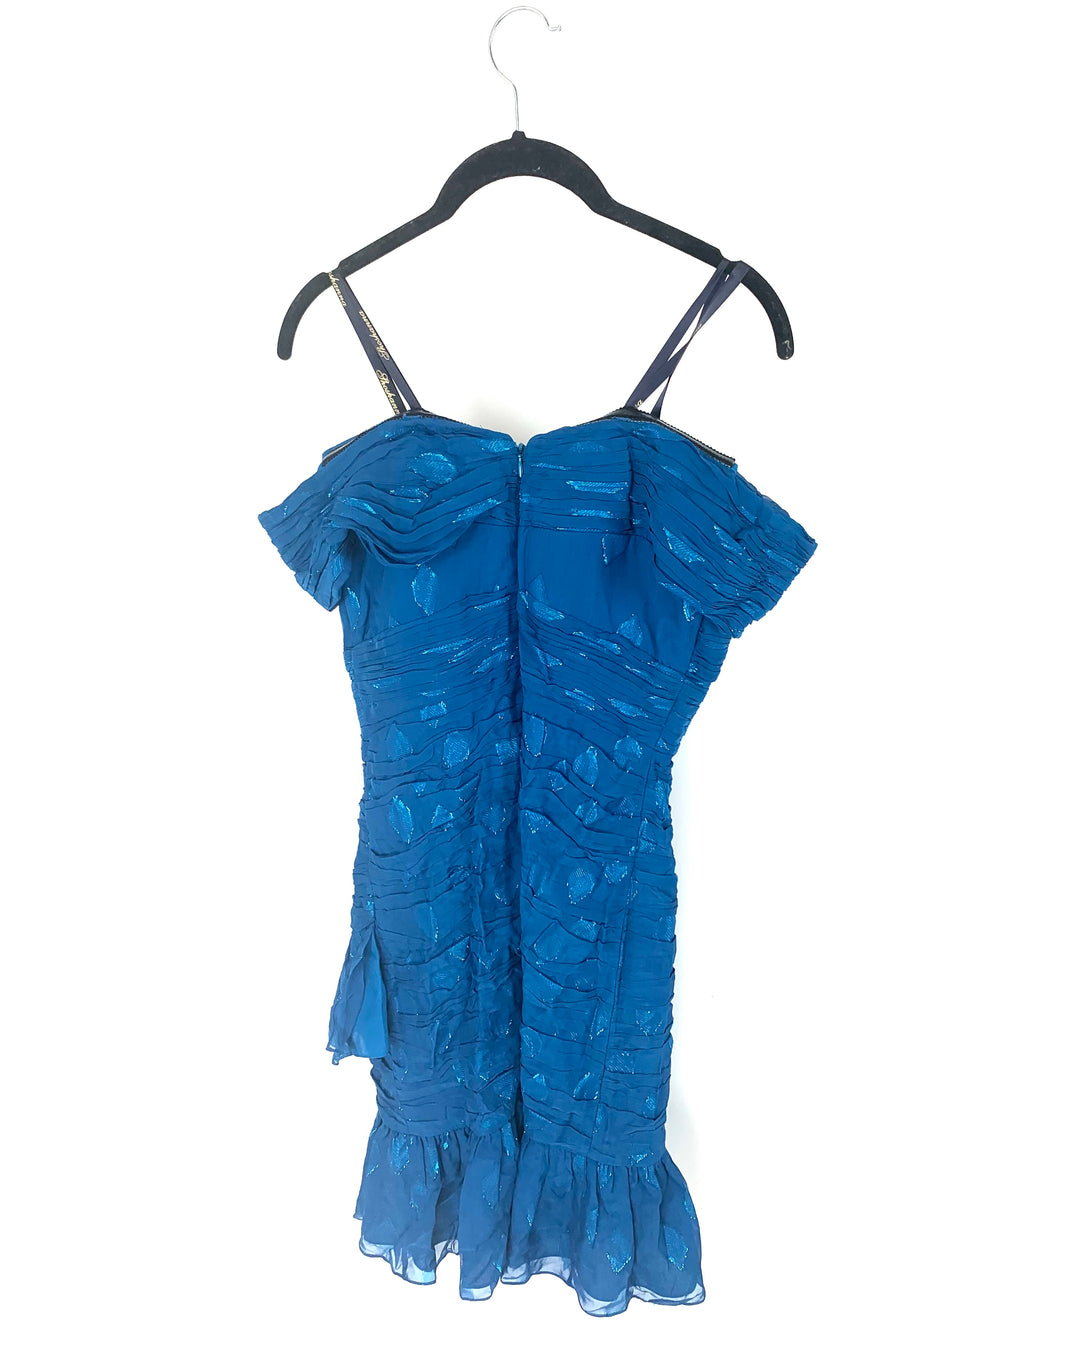 Cerulean Blue Off-the-Shoulder Cocktail Dress - Size 2/4